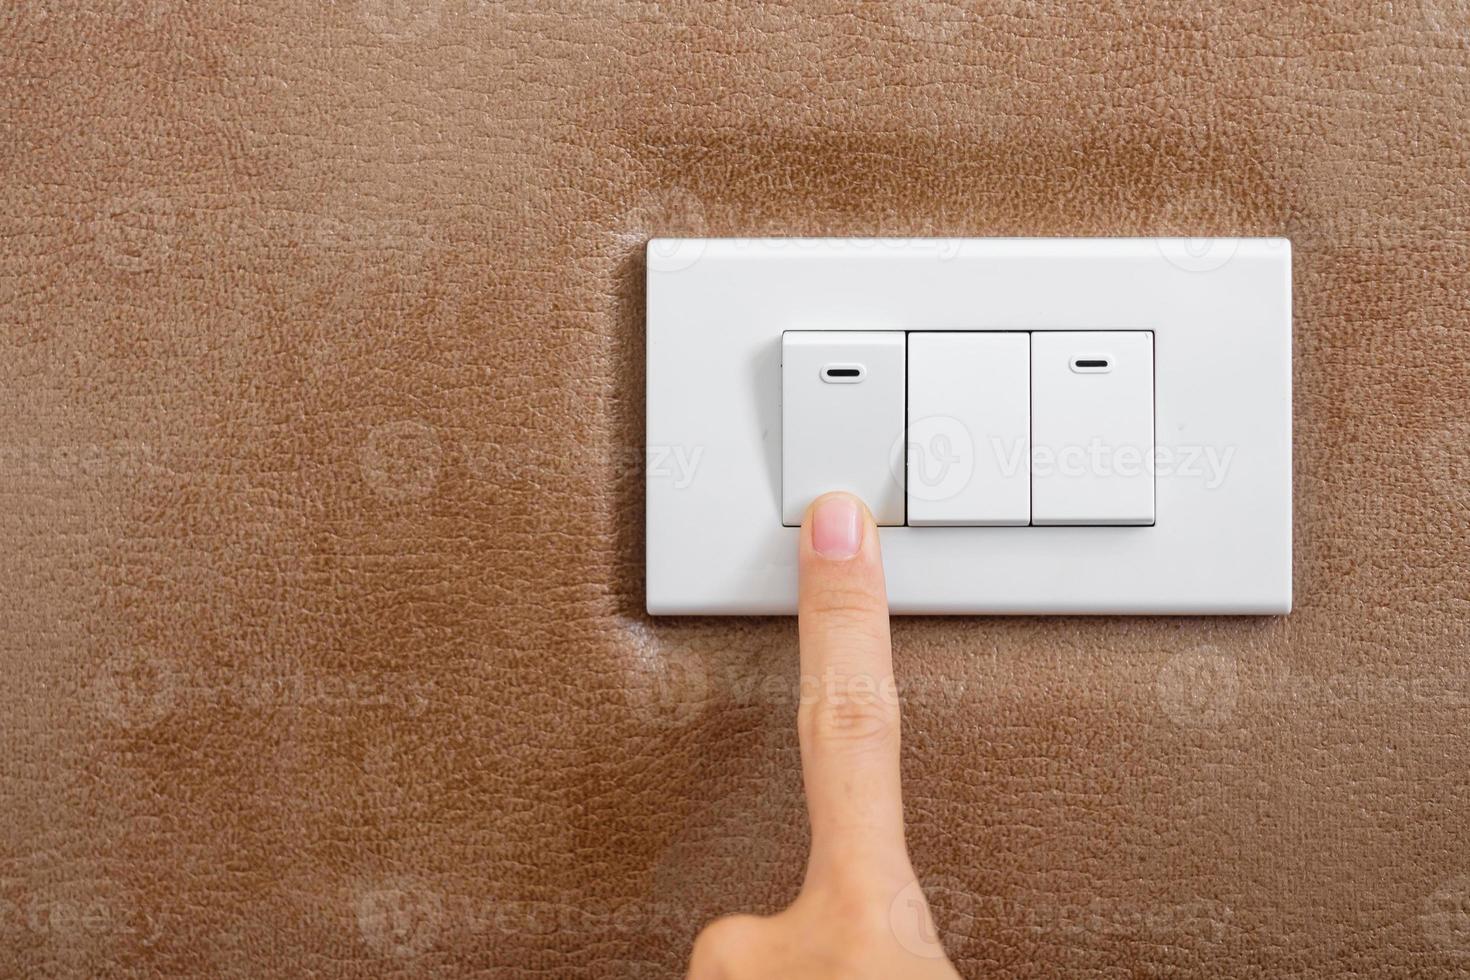 le doigt allume ou éteint l'interrupteur d'éclairage sur le mur à la maison. concepts d'économie d'énergie, d'électricité, d'électricité et de style de vie photo